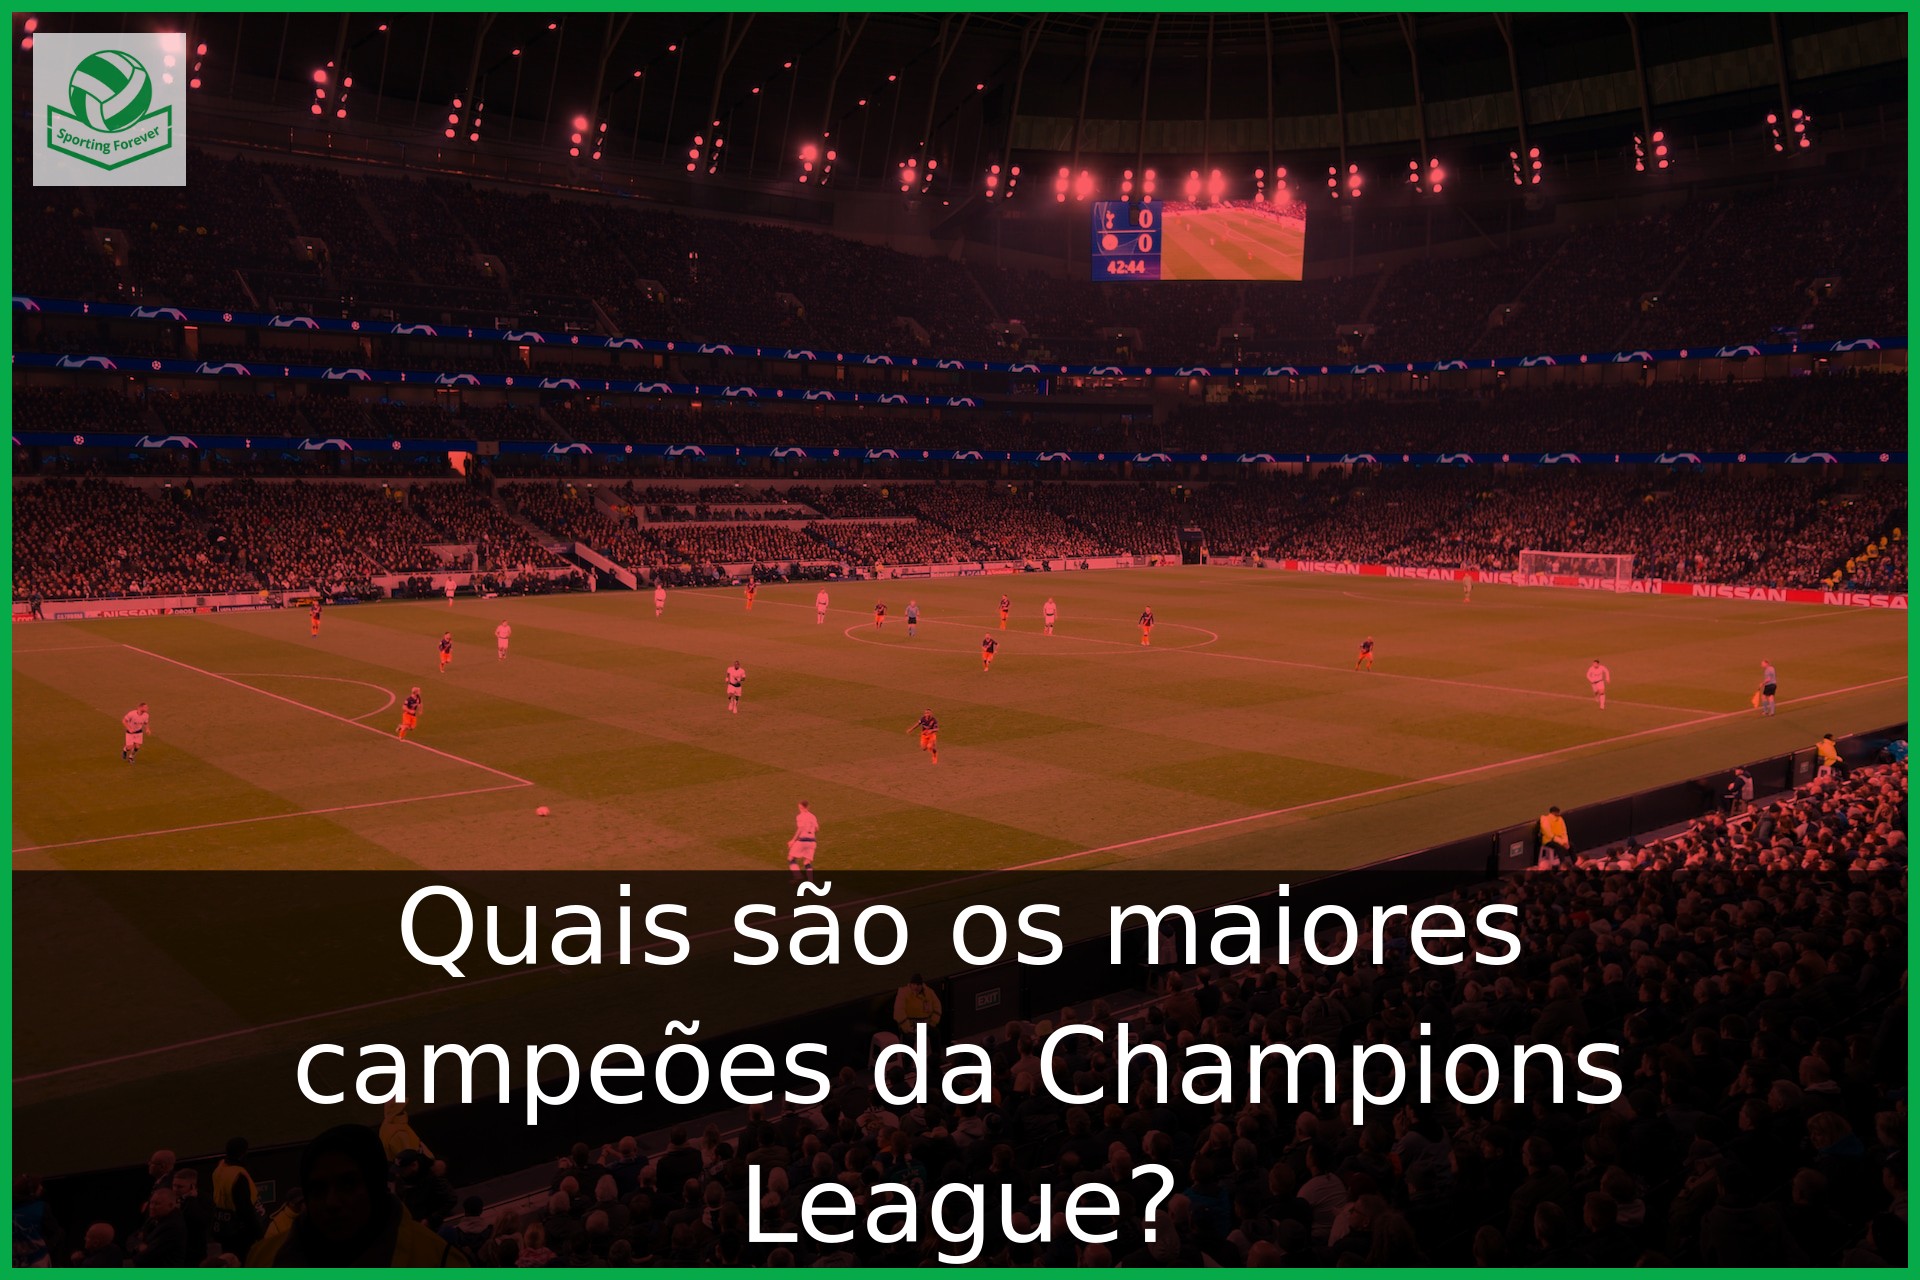 Quais são os maiores campeões da Champions League?